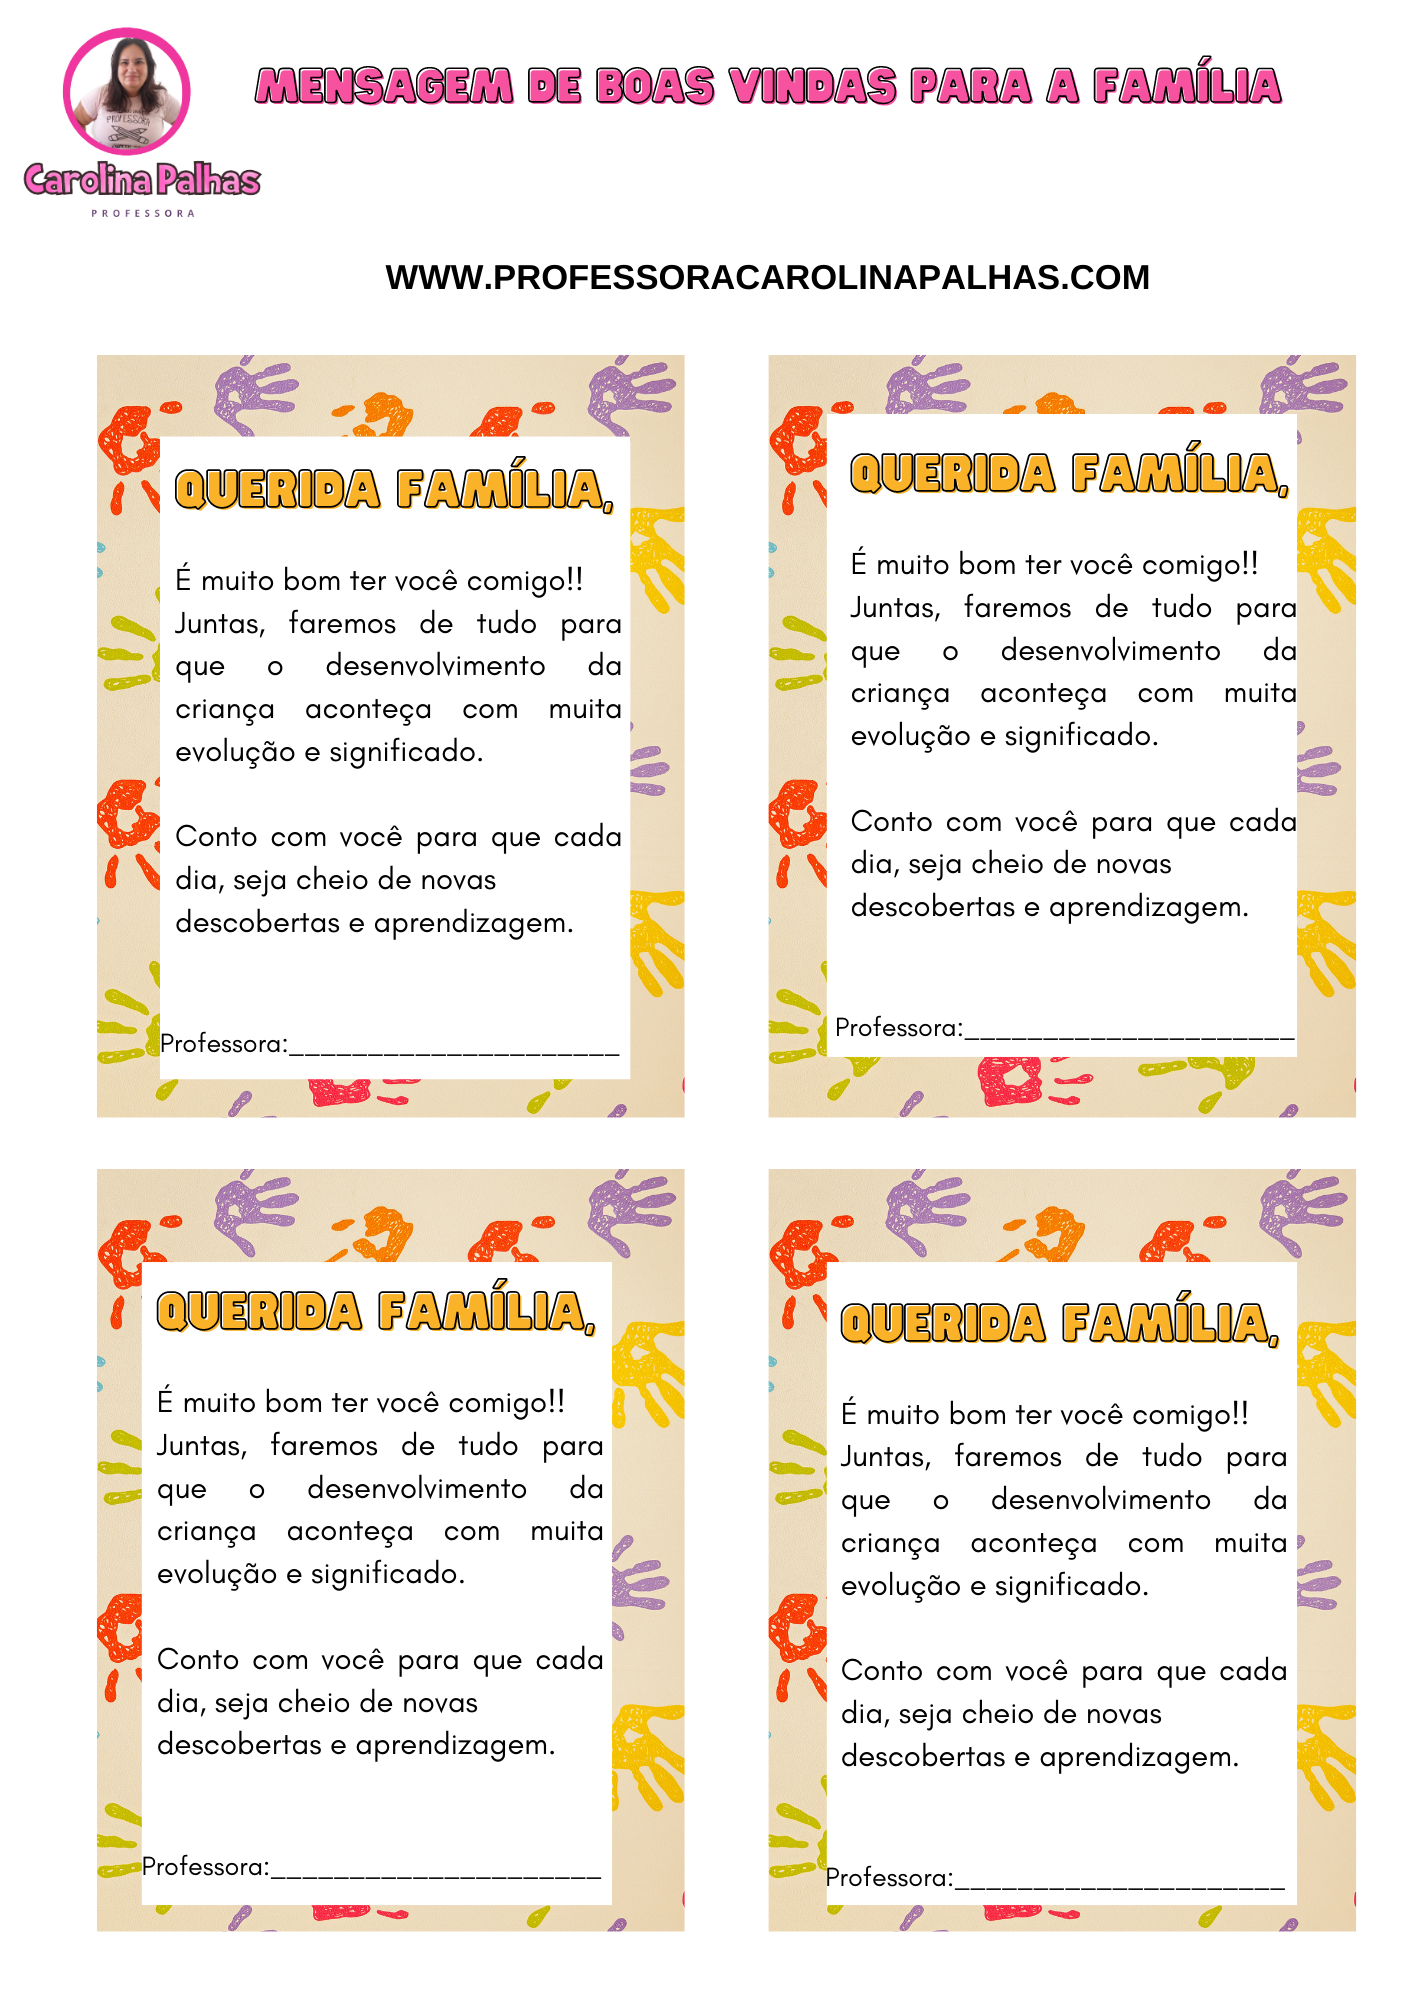 Cartão Mensagem Para Imprimir E Utilizar Na Reunião De Pais. - Professora  Carolina Palhas